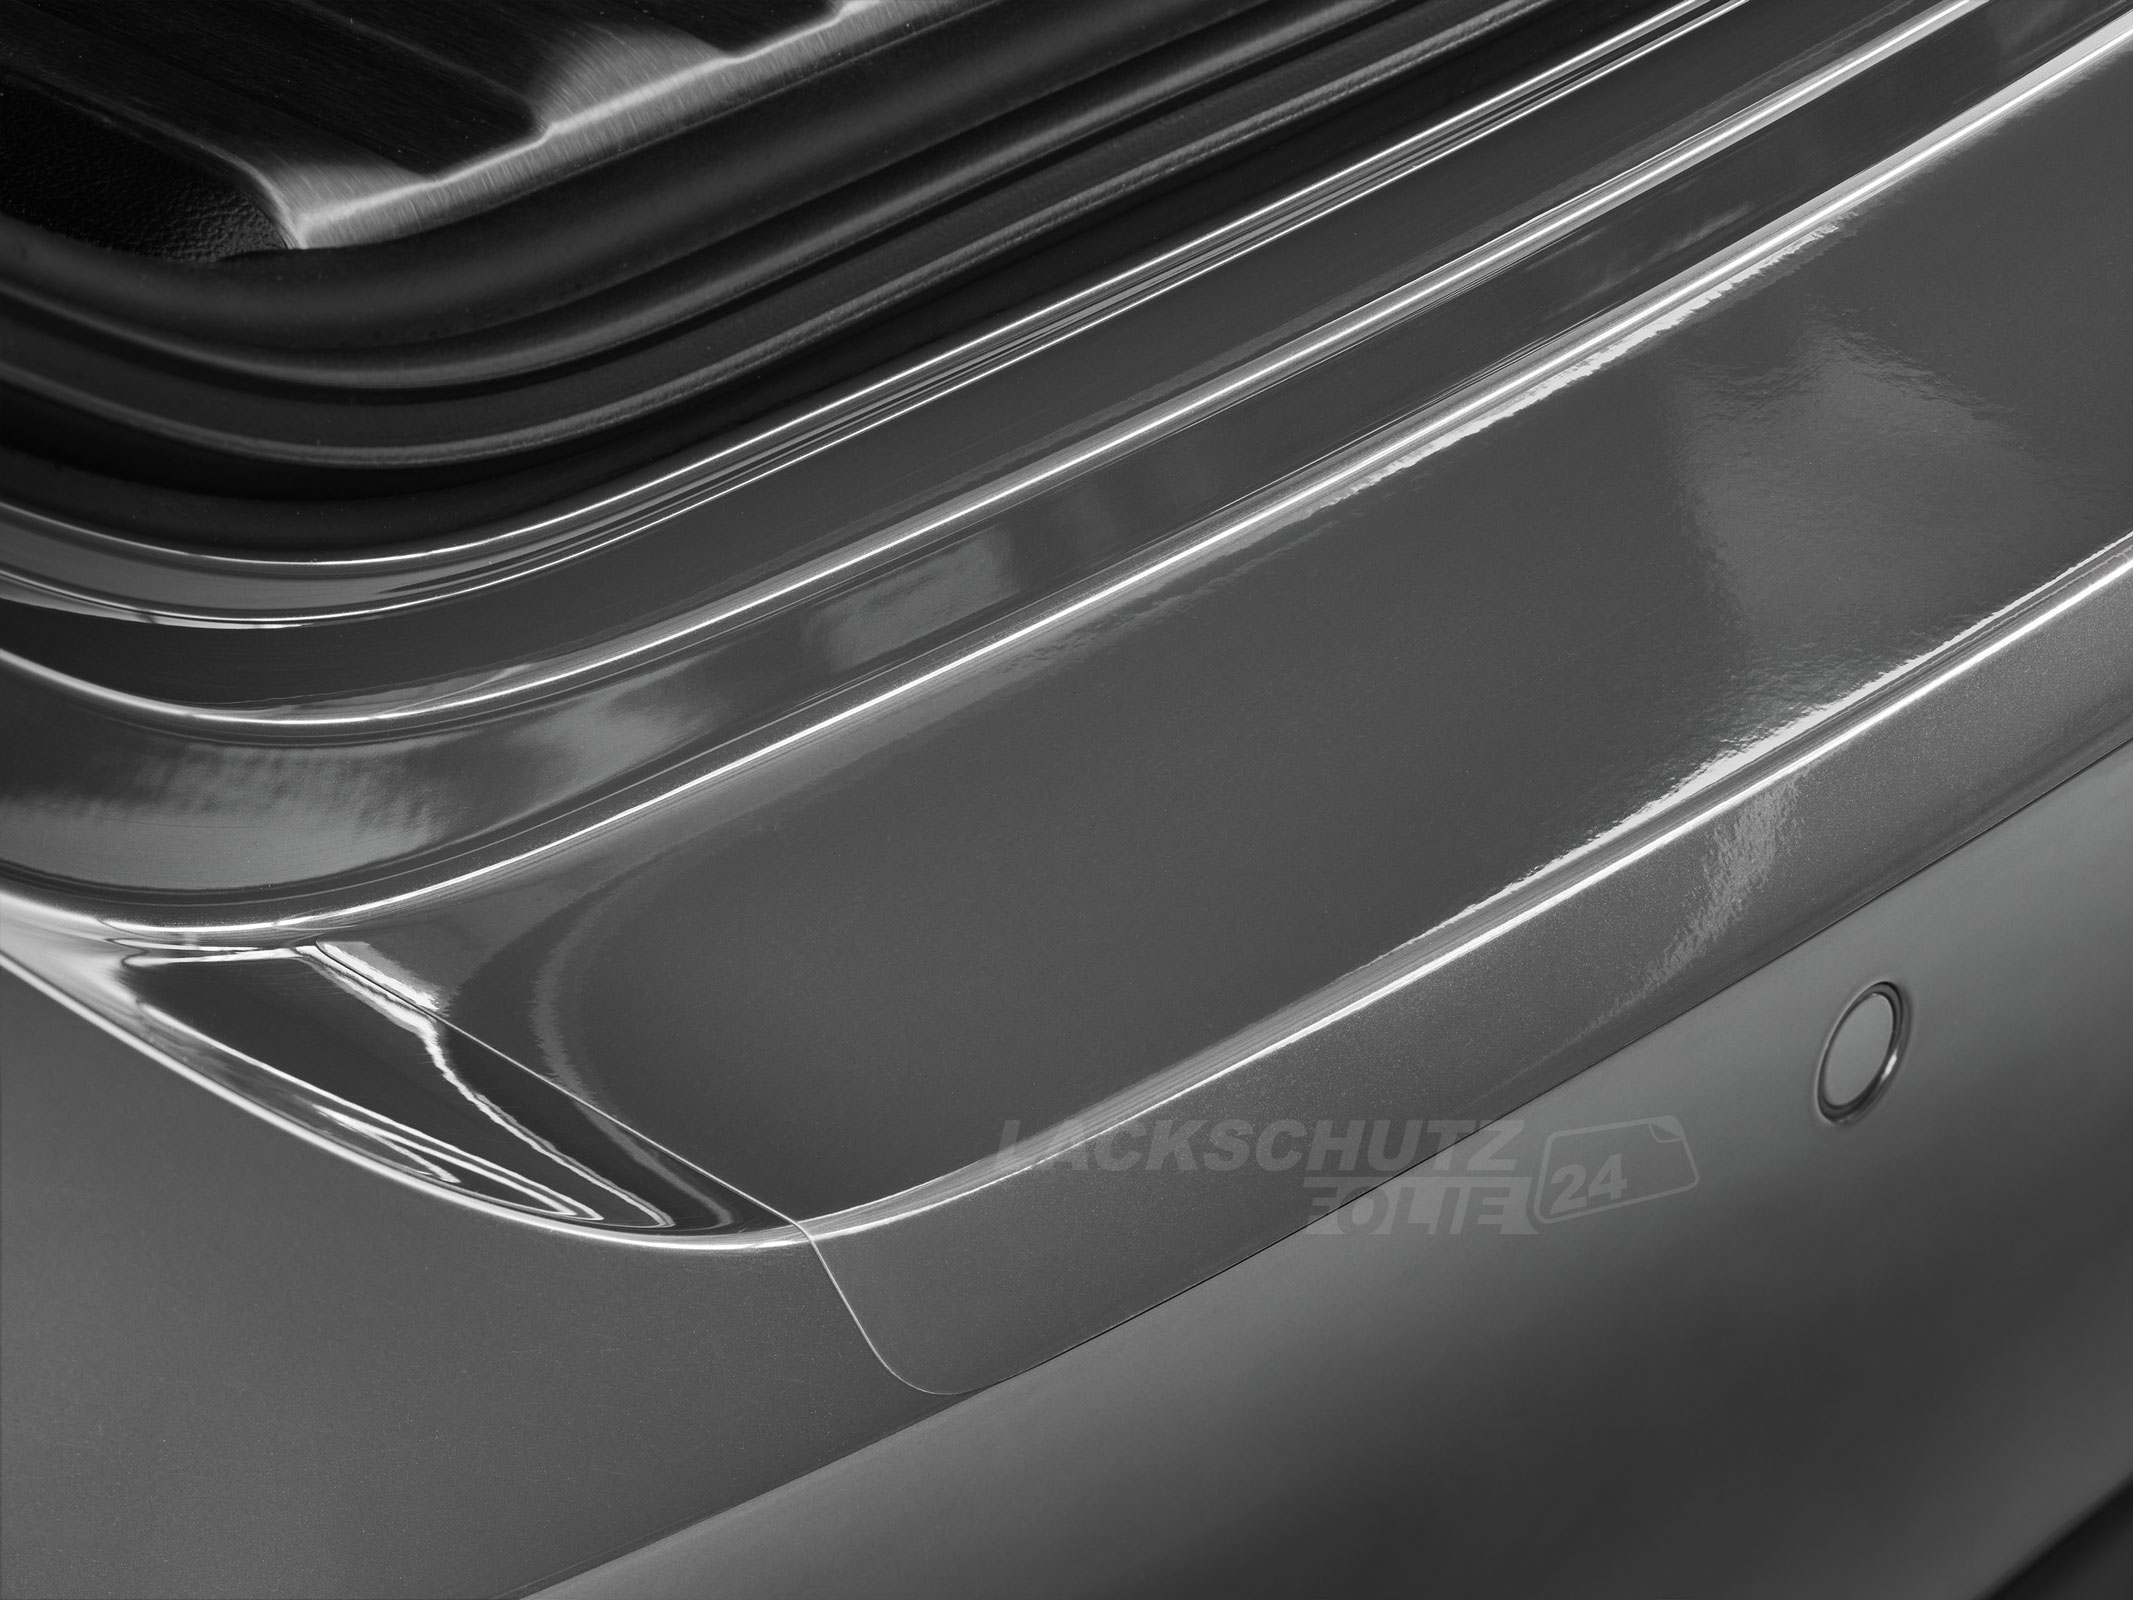 Ladekantenschutzfolie - Transparent Glatt Hochglänzend 240 µm stark für VW / Volkswagen Polo (V) Typ 6R, BJ 06/2009-2014